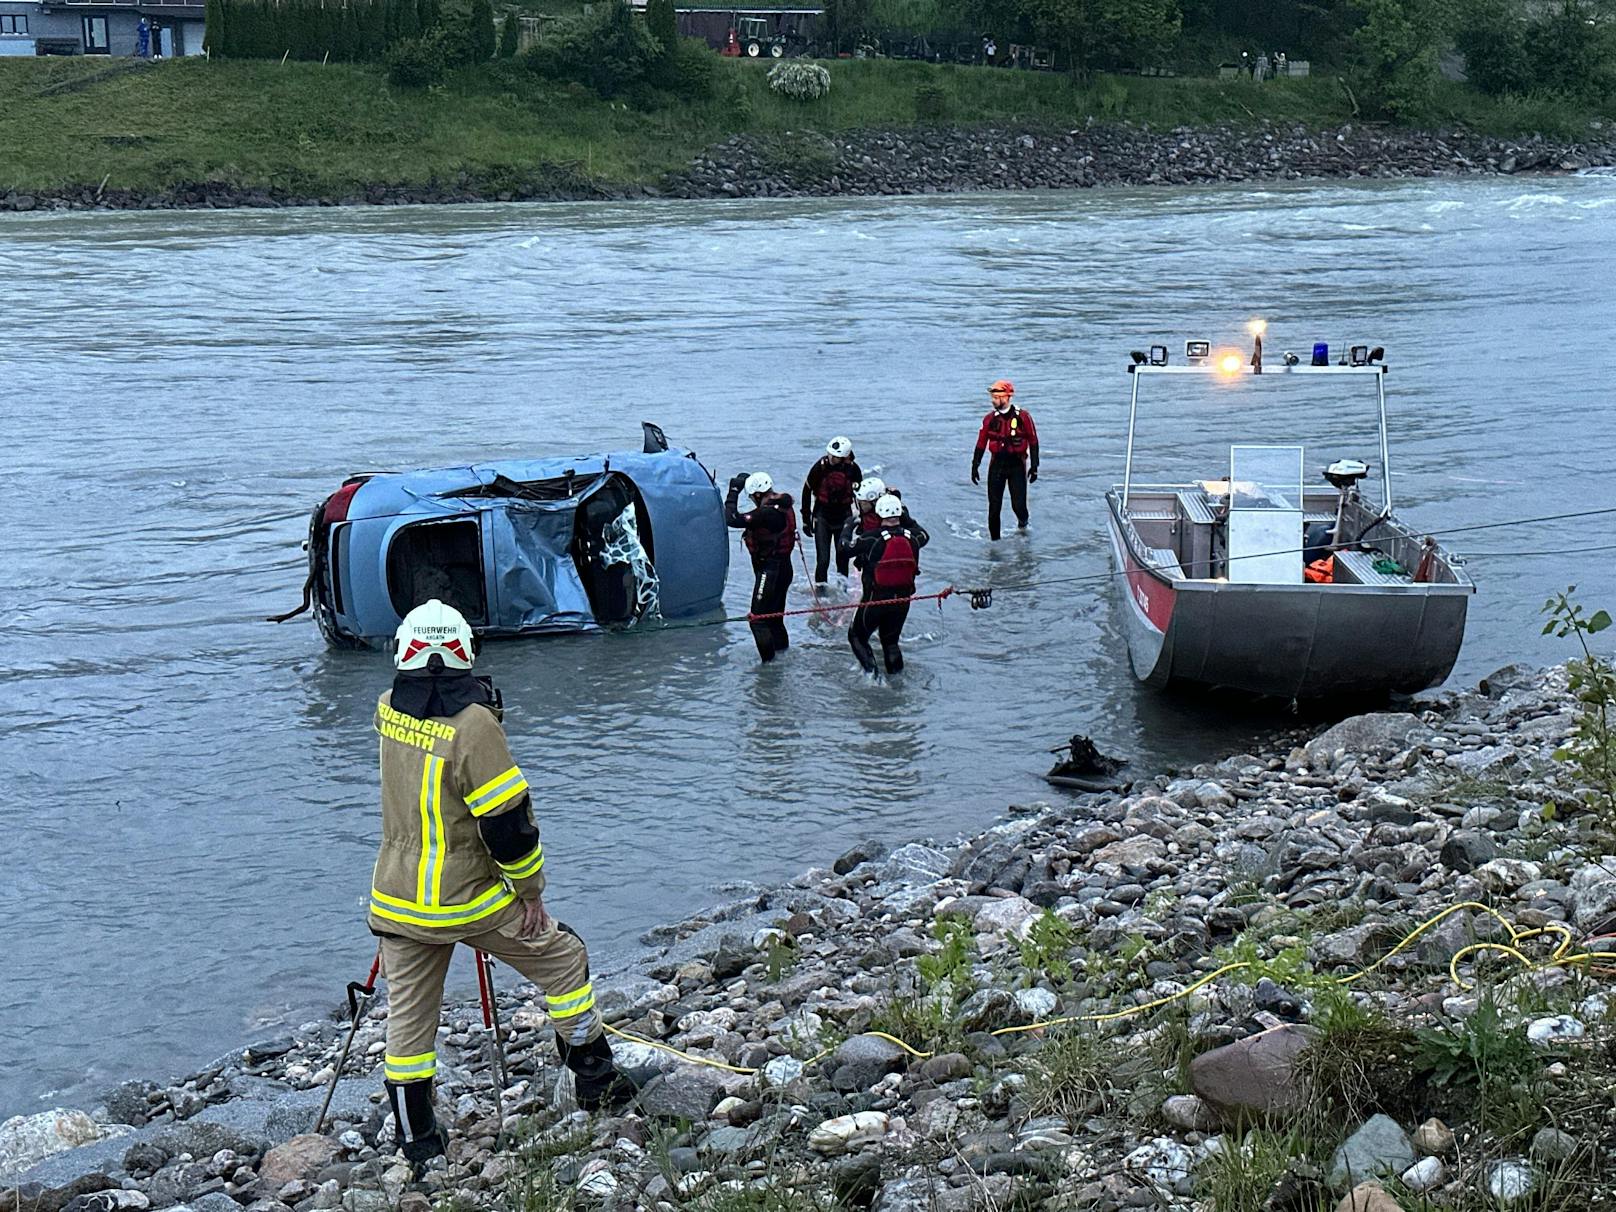 Tragödie am Dienstag in Tirol! Aus bislang ungeklärter Ursache ist ein Autofahrer in den Inn gestürzt – für den Mann kam jede Hilfe zu spät. Die Ermittlungen laufen auf Hochtouren.